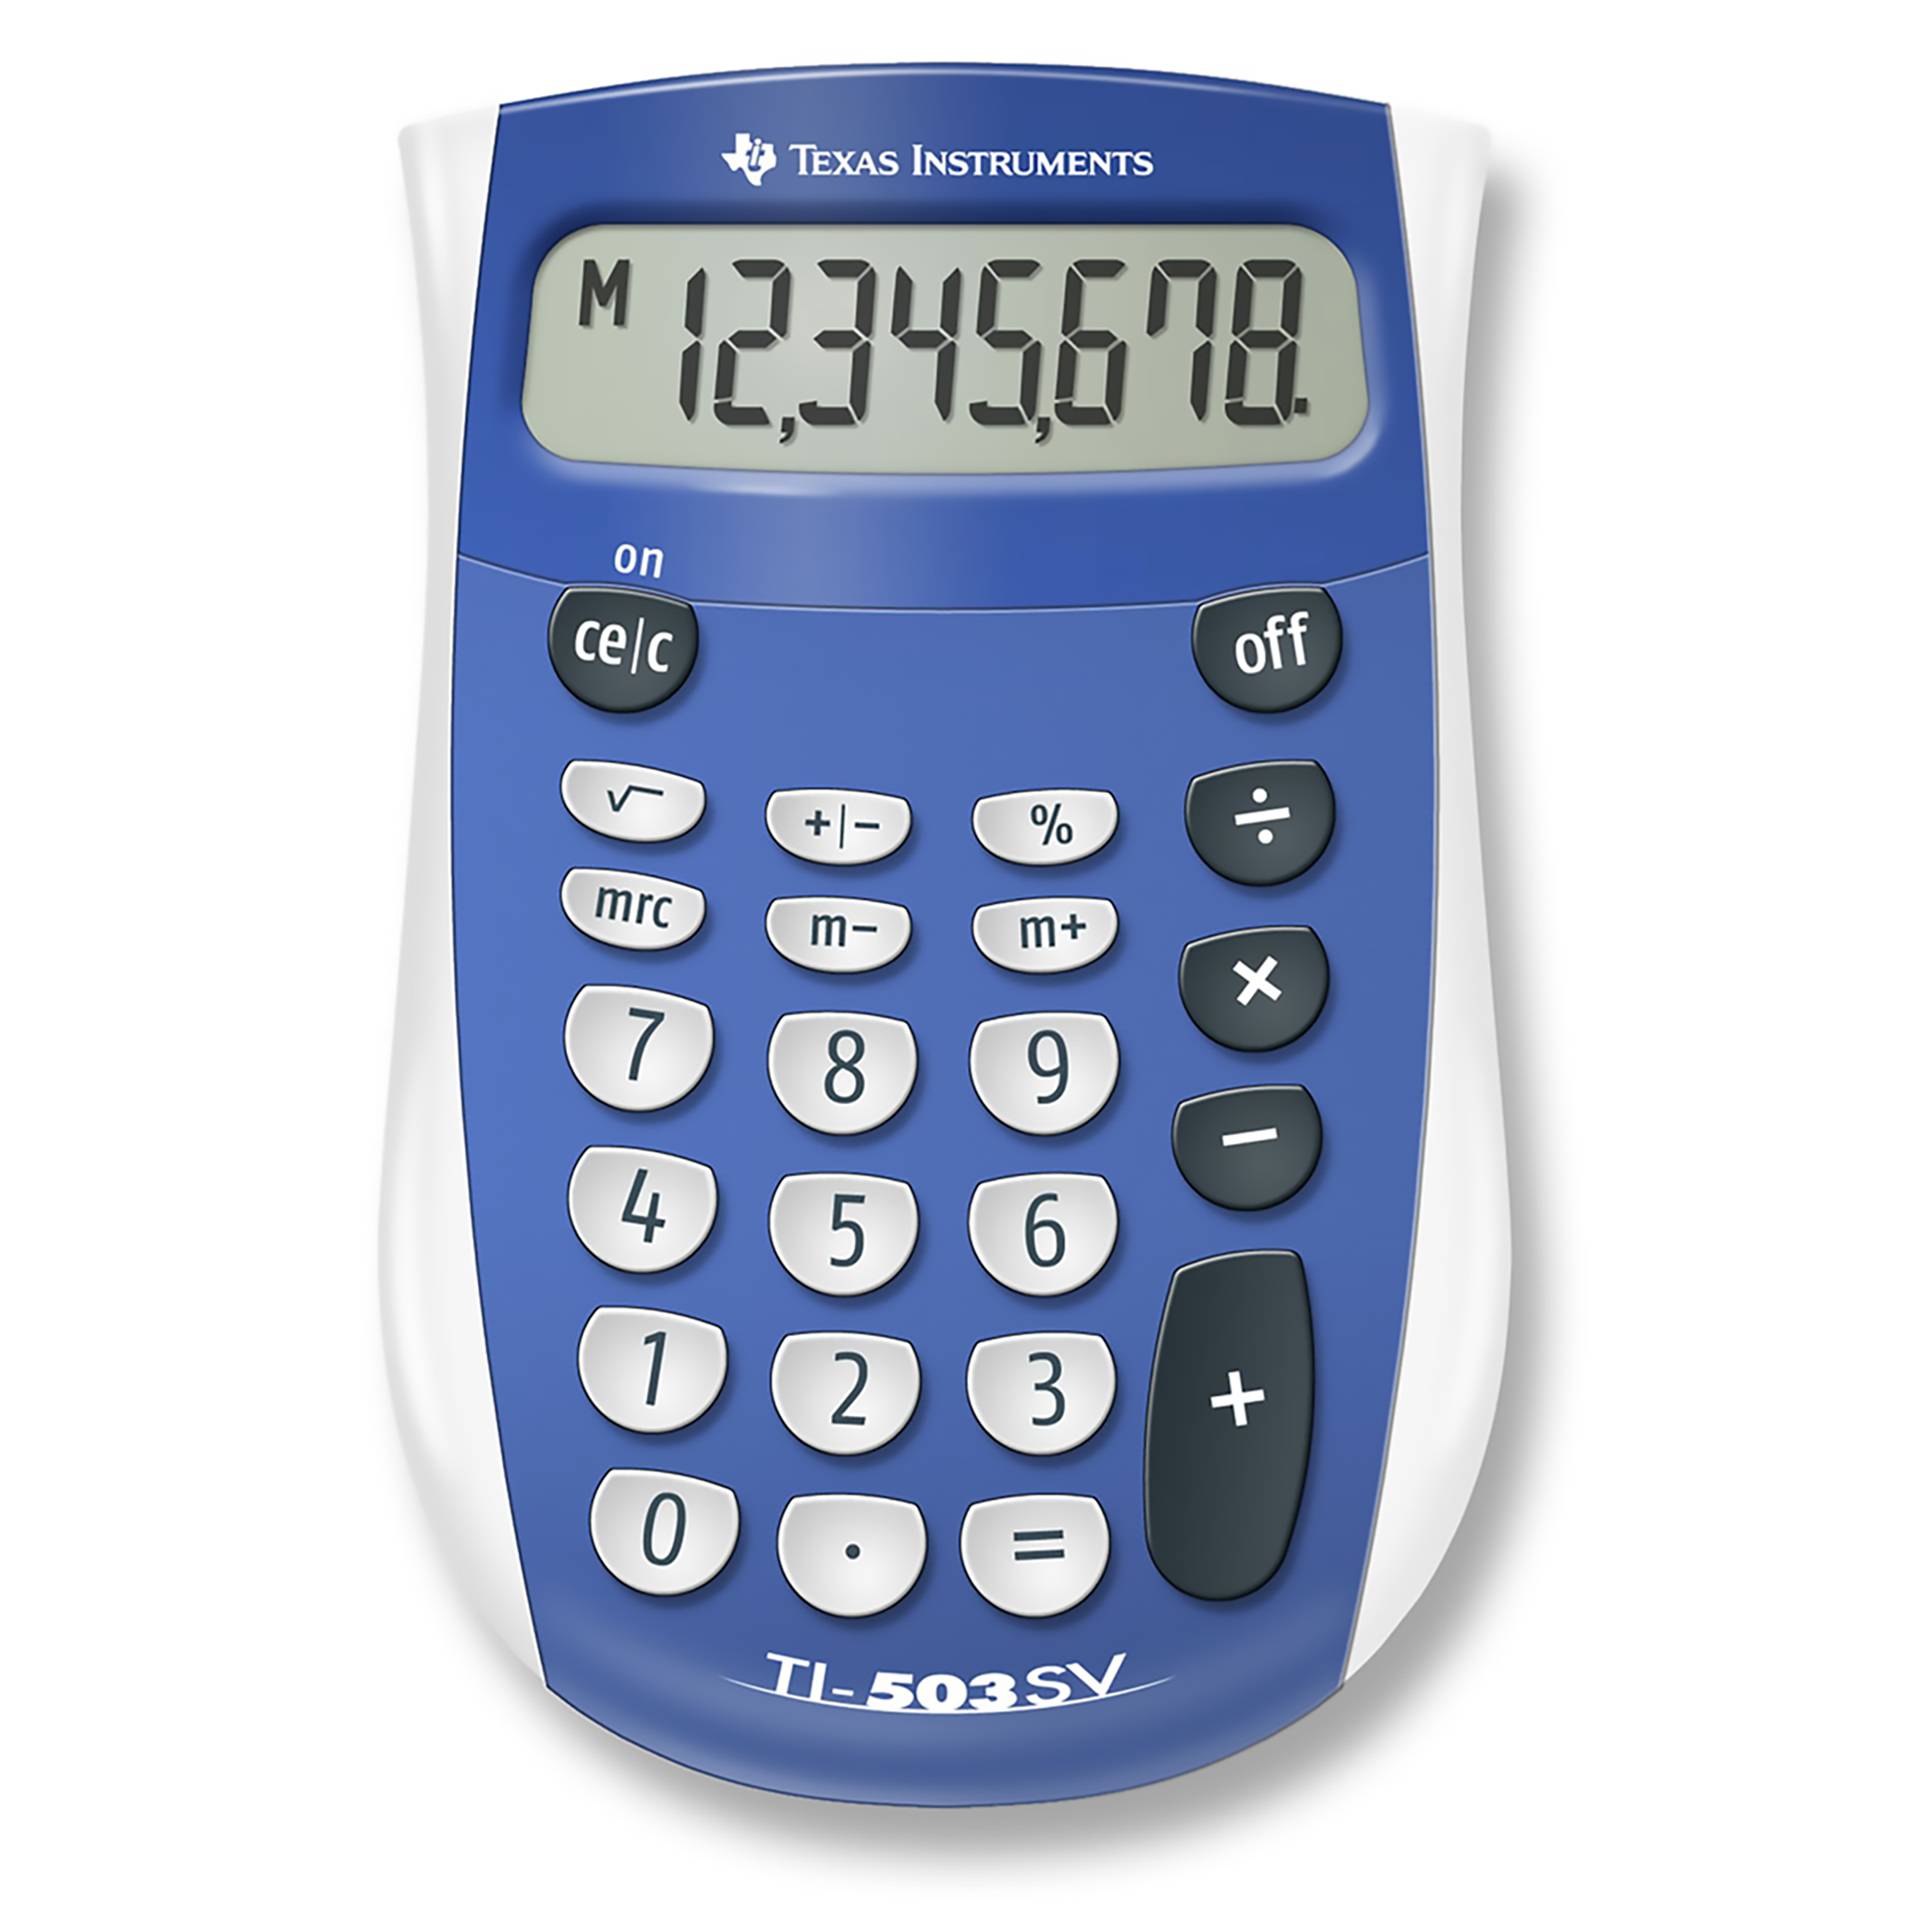 Texas Instruments TI-503 SV Taschenrechner Tasche Display-Rechner Blau, Grau